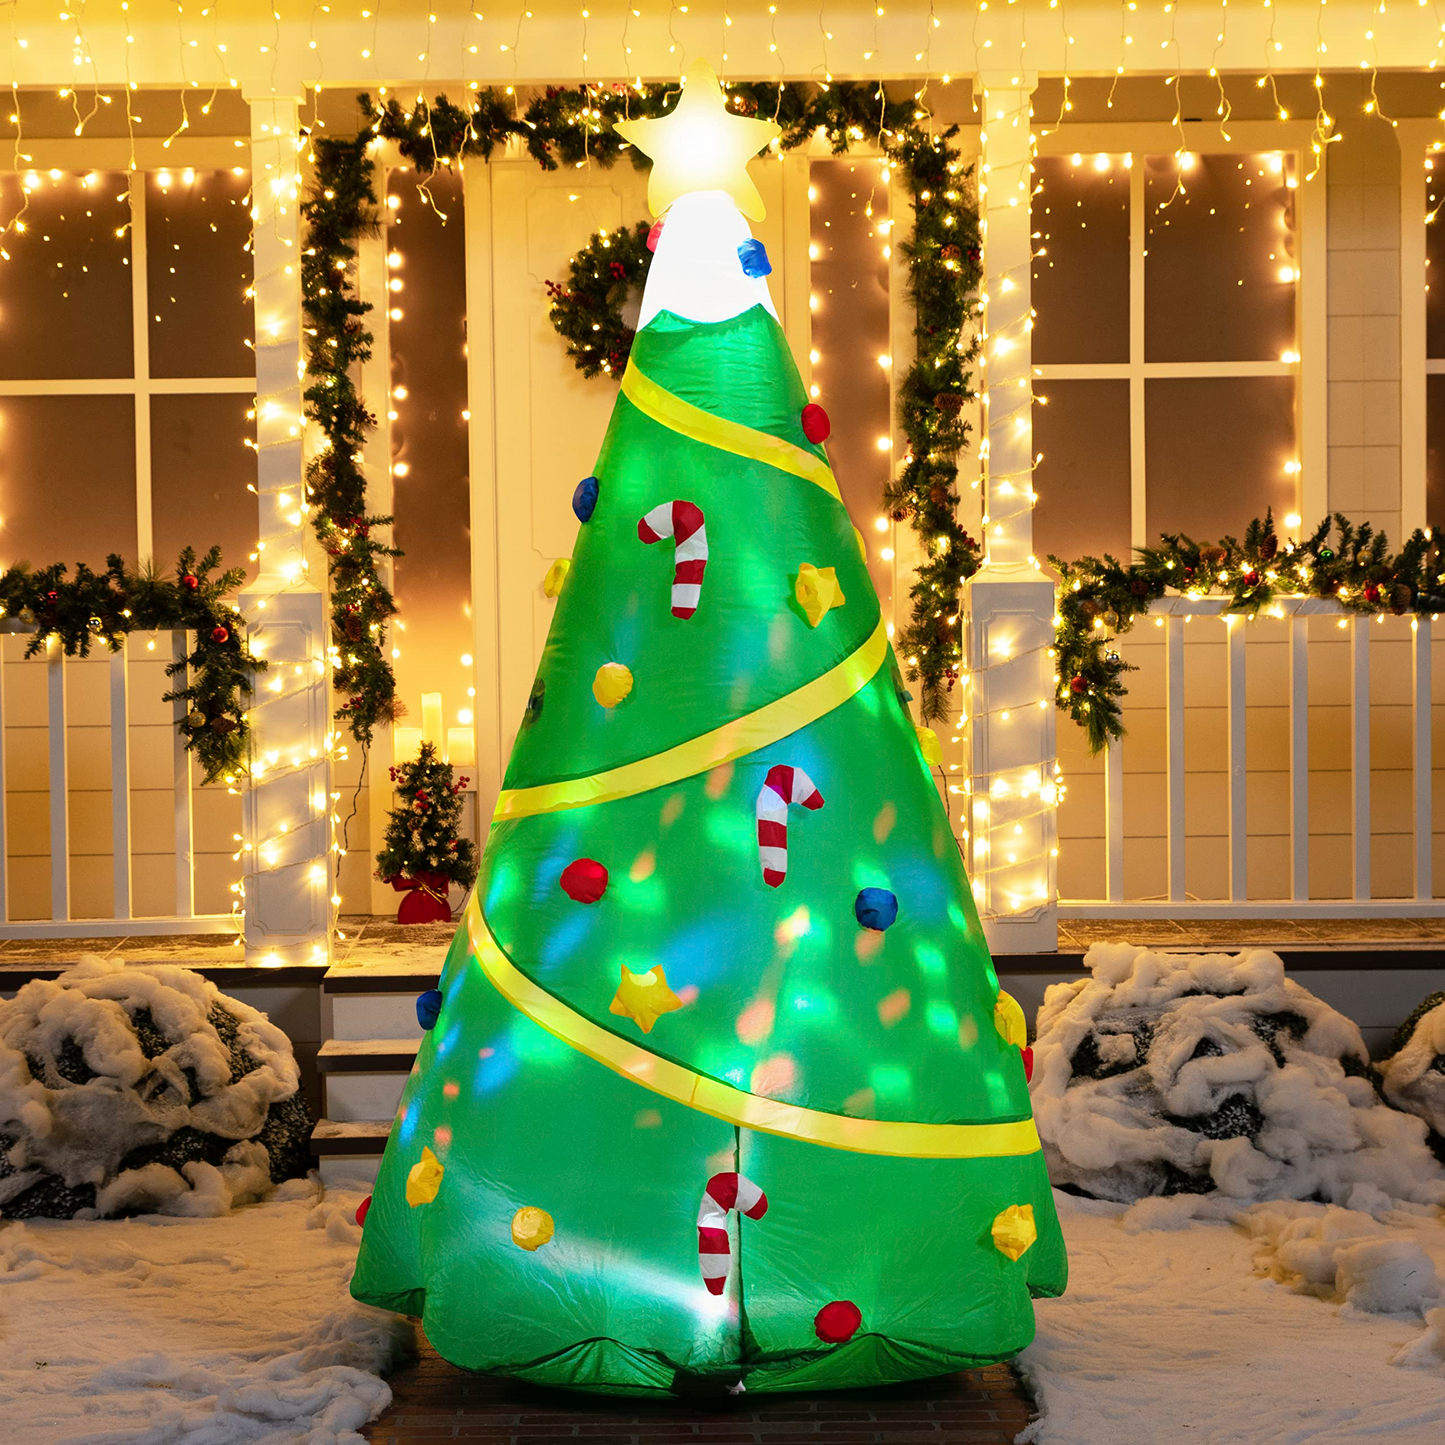 Jumbo Christmas Tree with Lights Inflatable (8 ft)